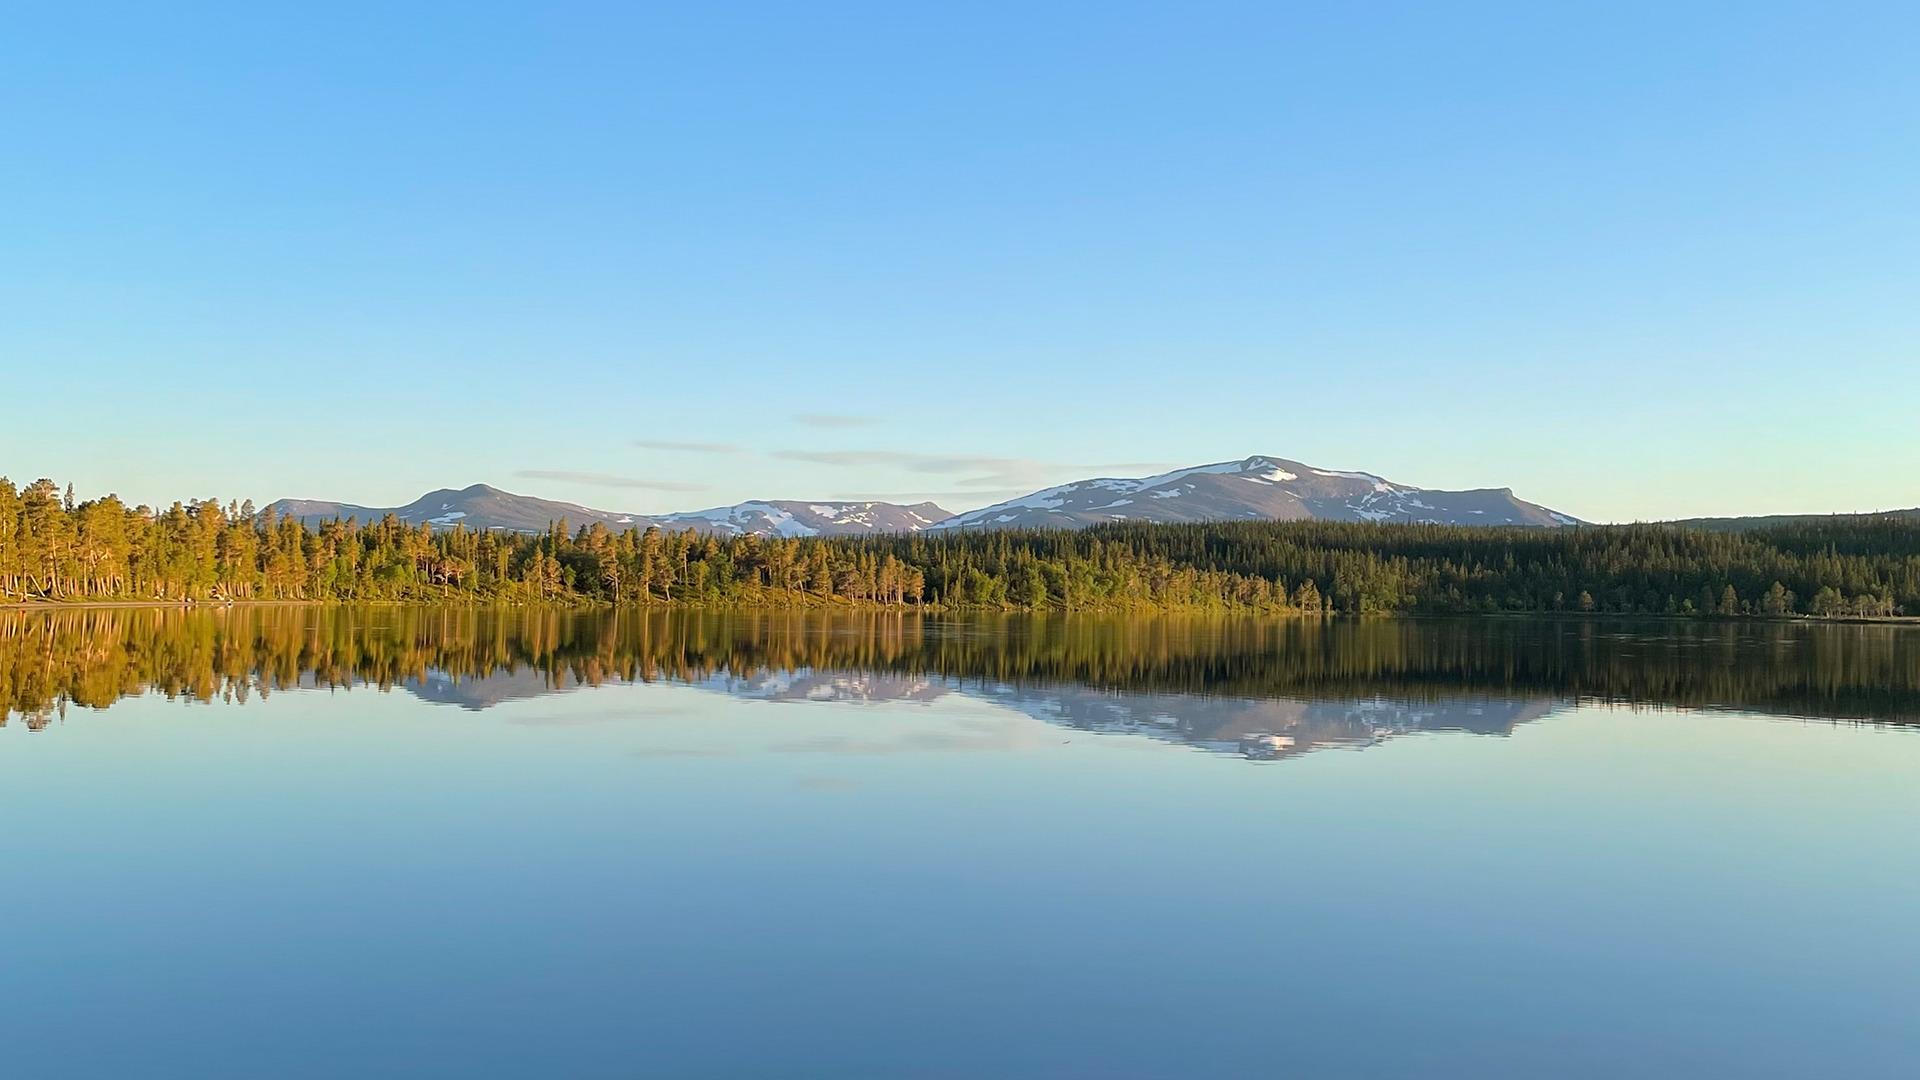 Das Wasser des Nulltjärn-Sees ist ruhig und spiegelt den blauen Himmel und die umliegenden Wälder und Berge wider.